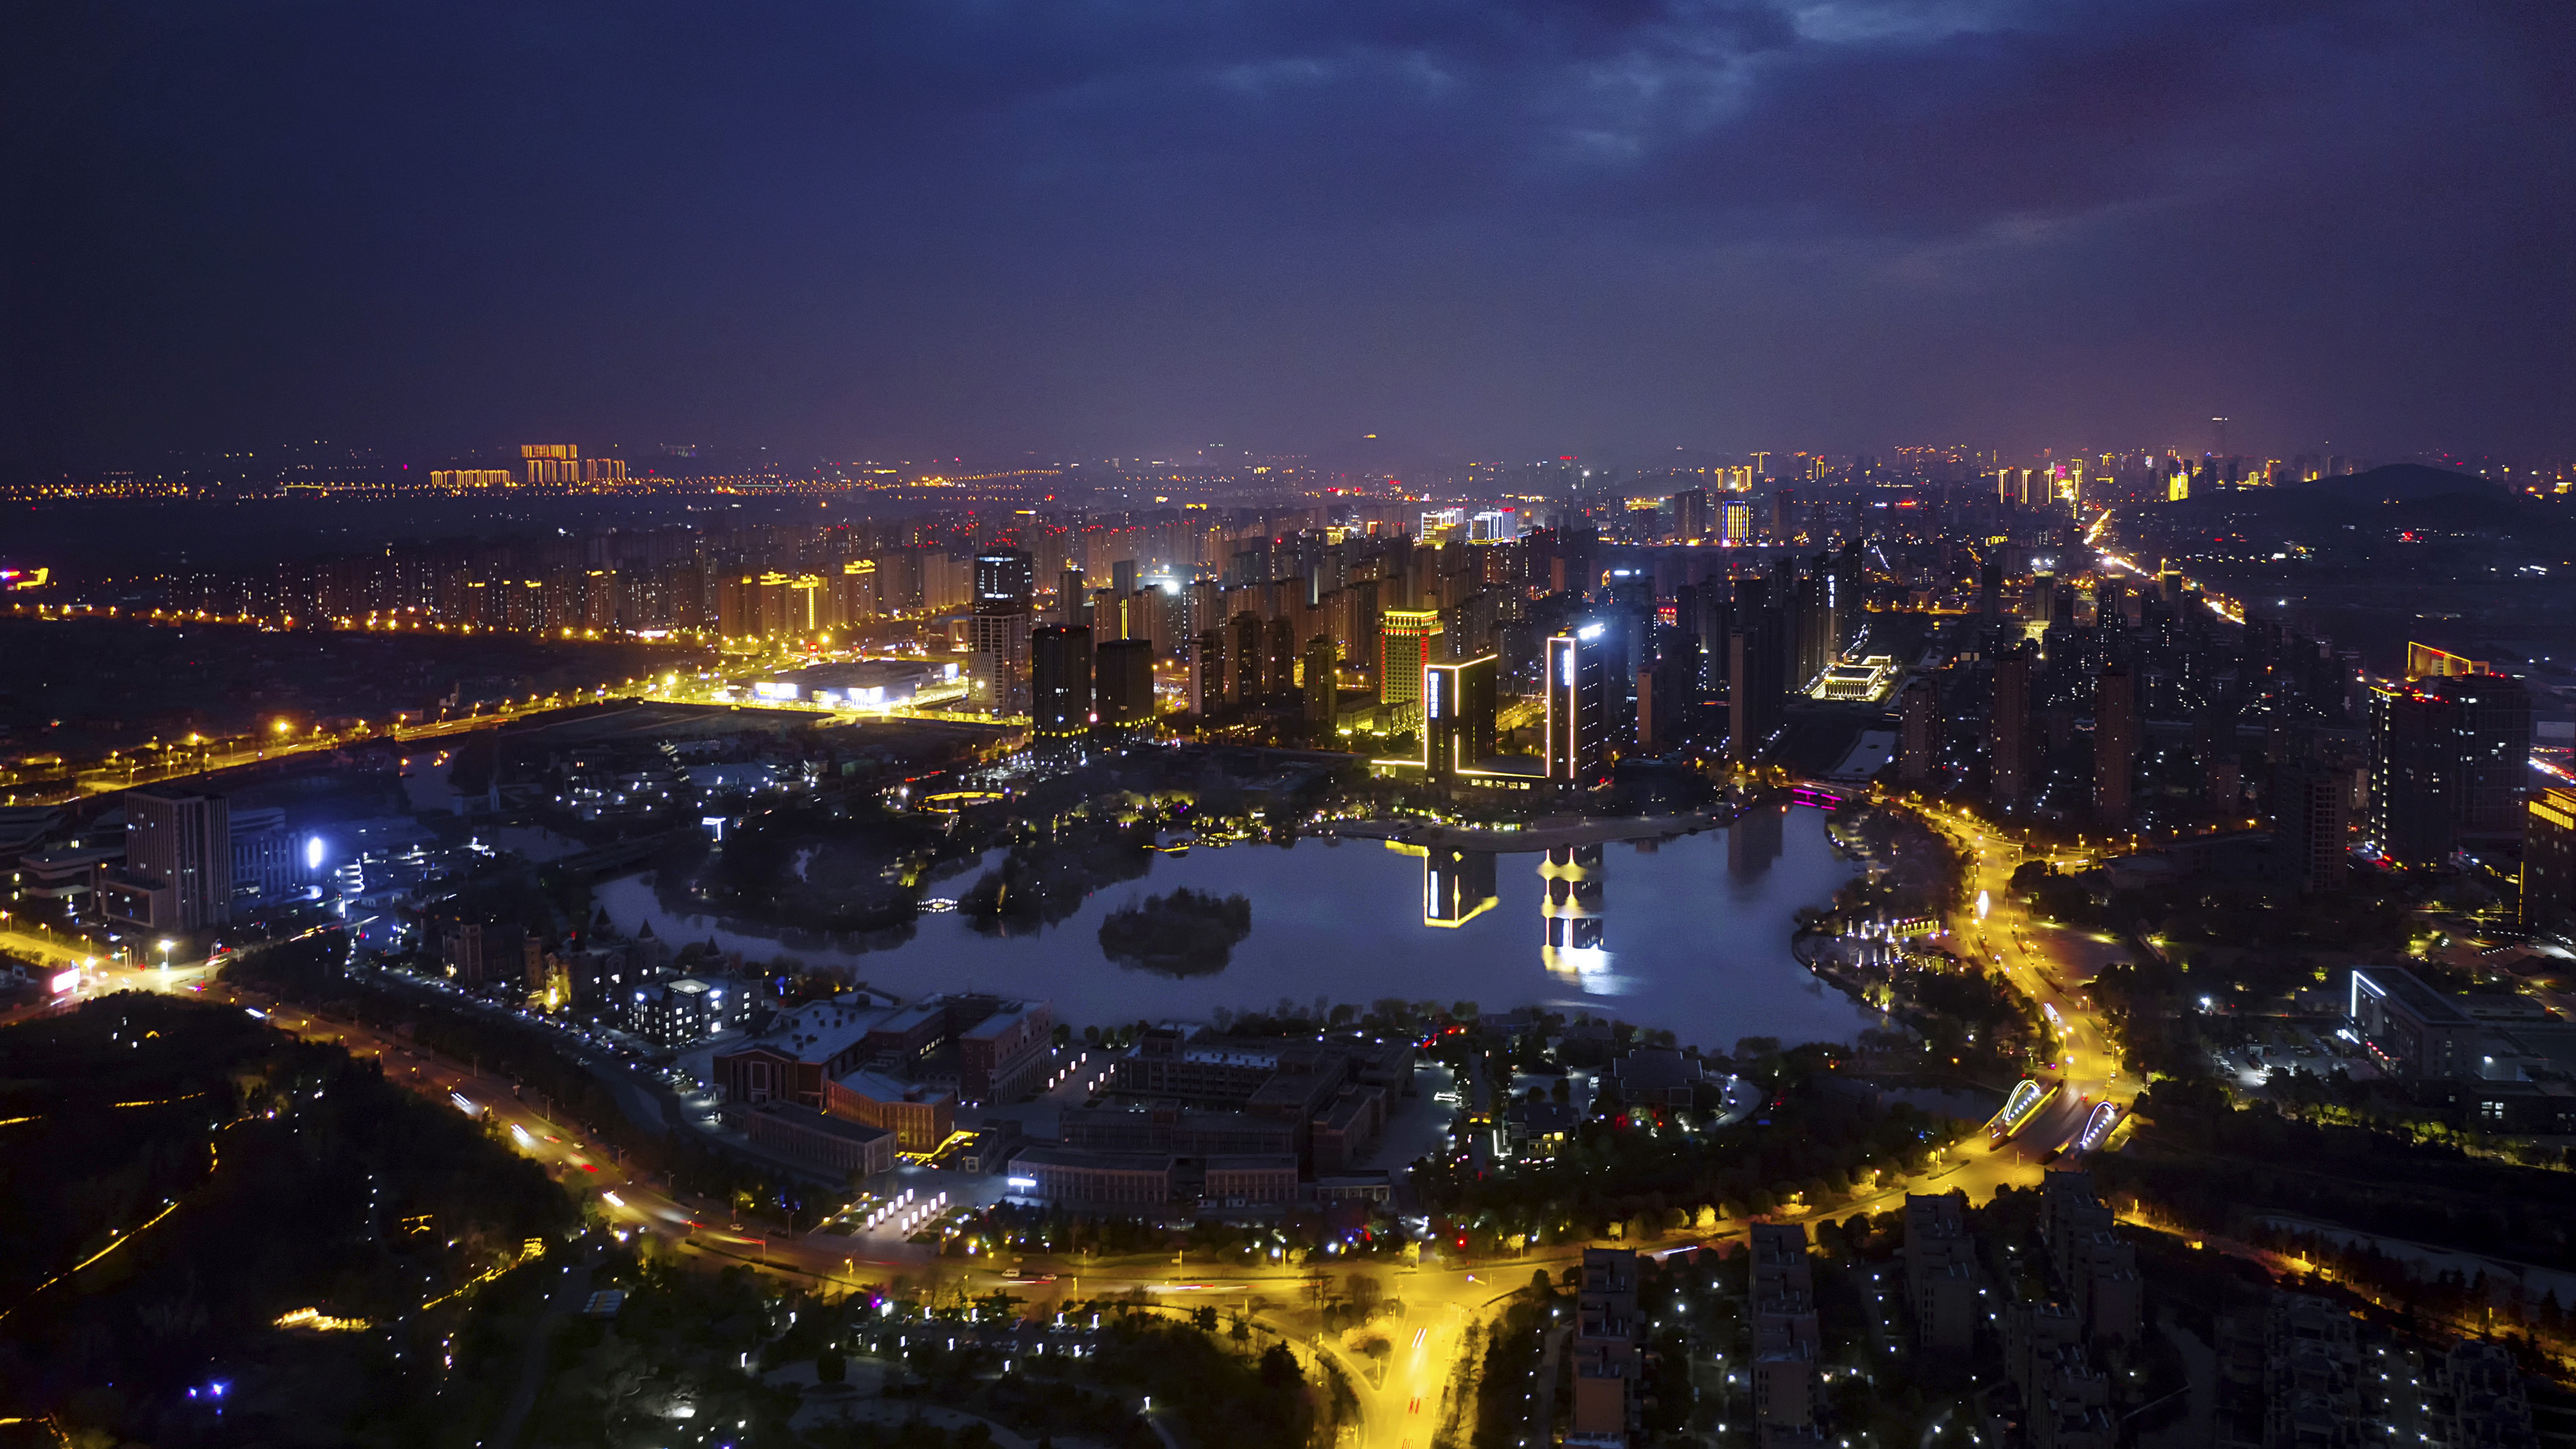 徐州夜景好看的景点图片